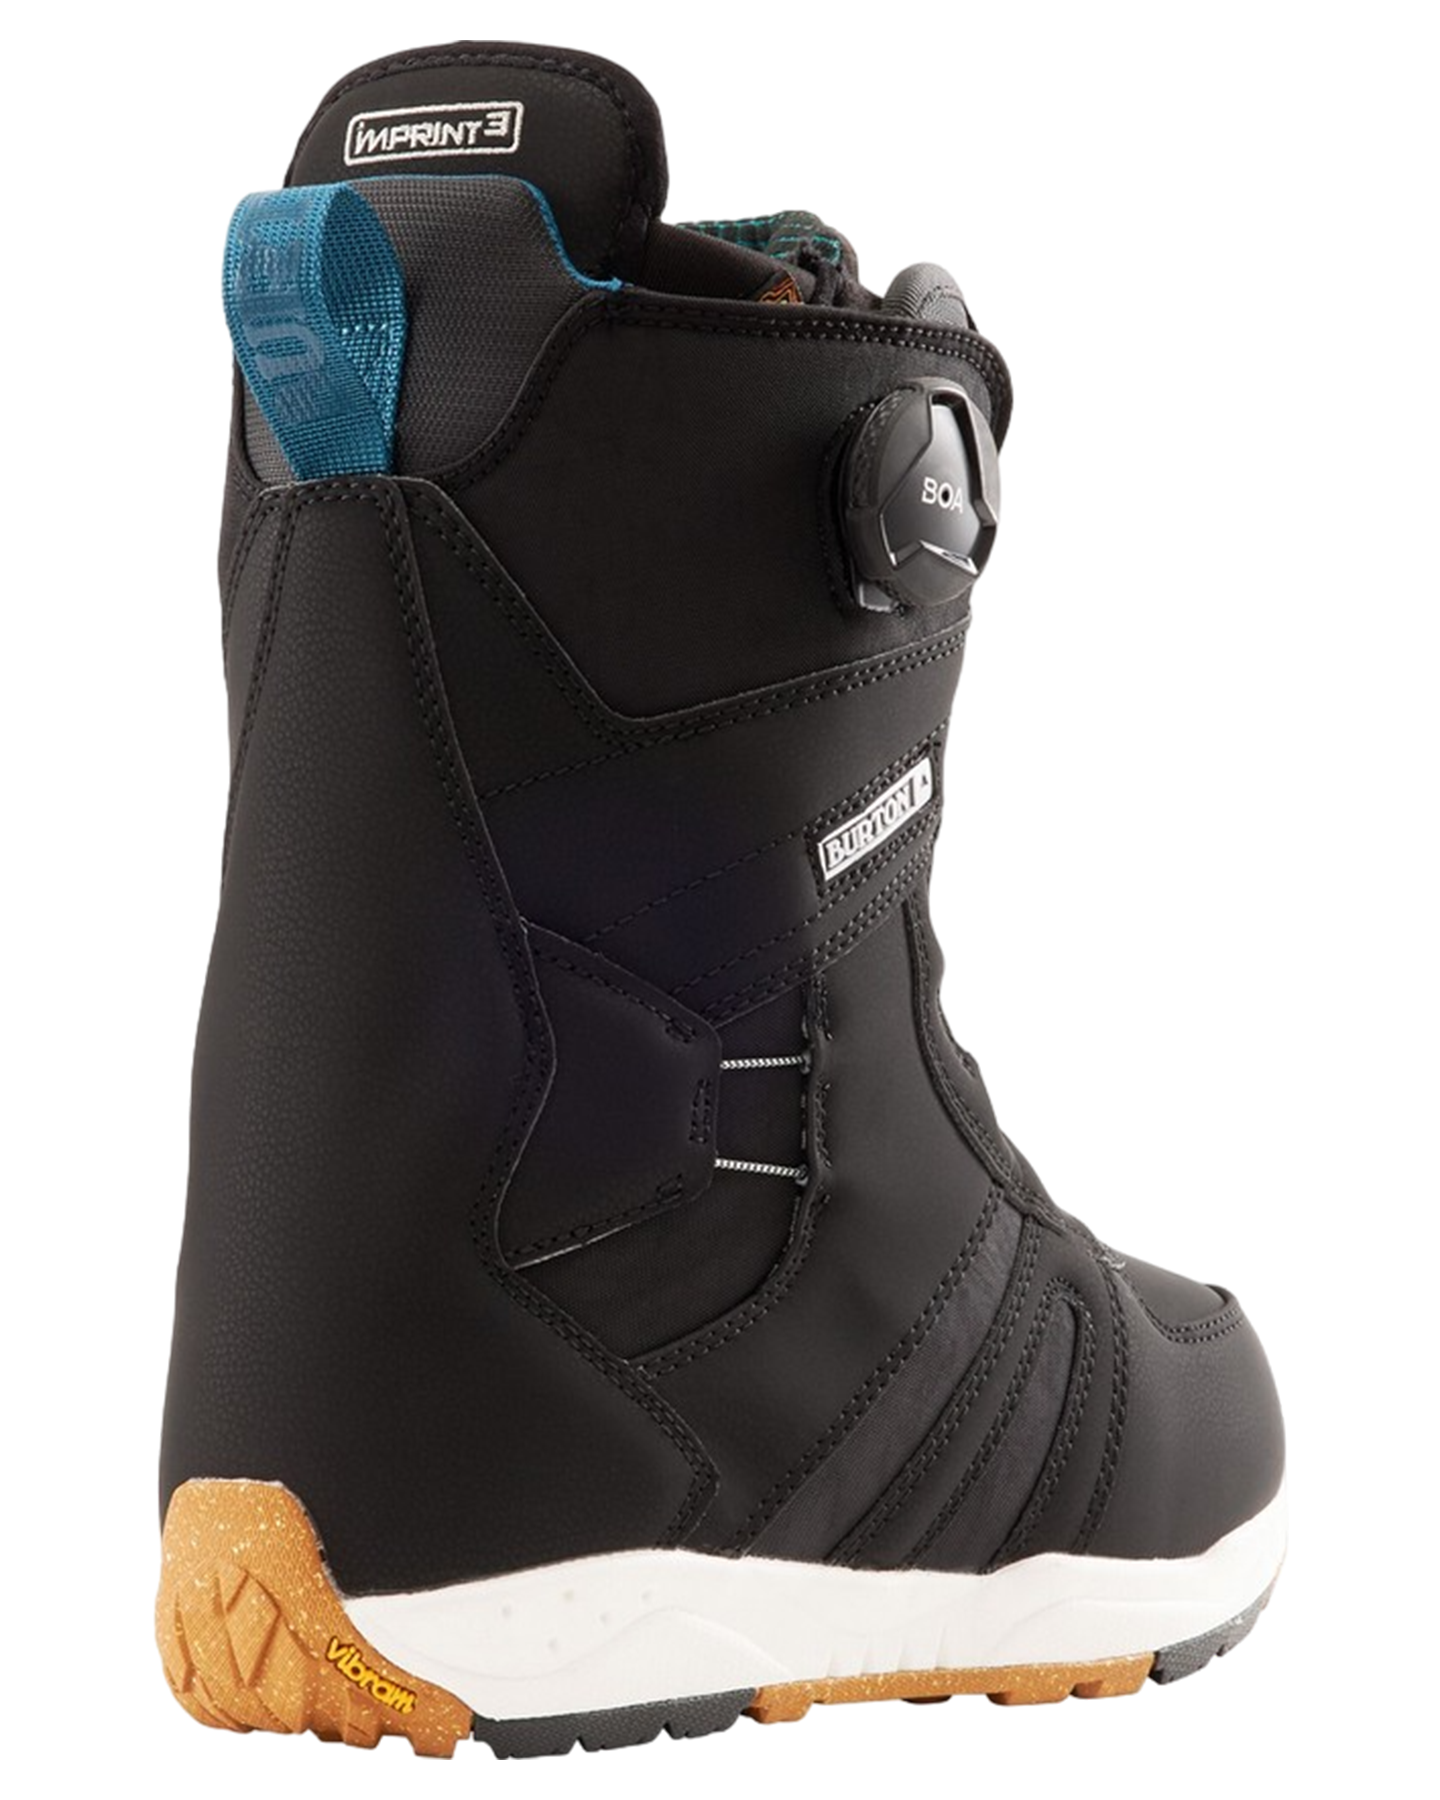 Burton Women's Felix Boa® Snowboard Boots - Black Snowboard Boots - Womens - Trojan Wake Ski Snow